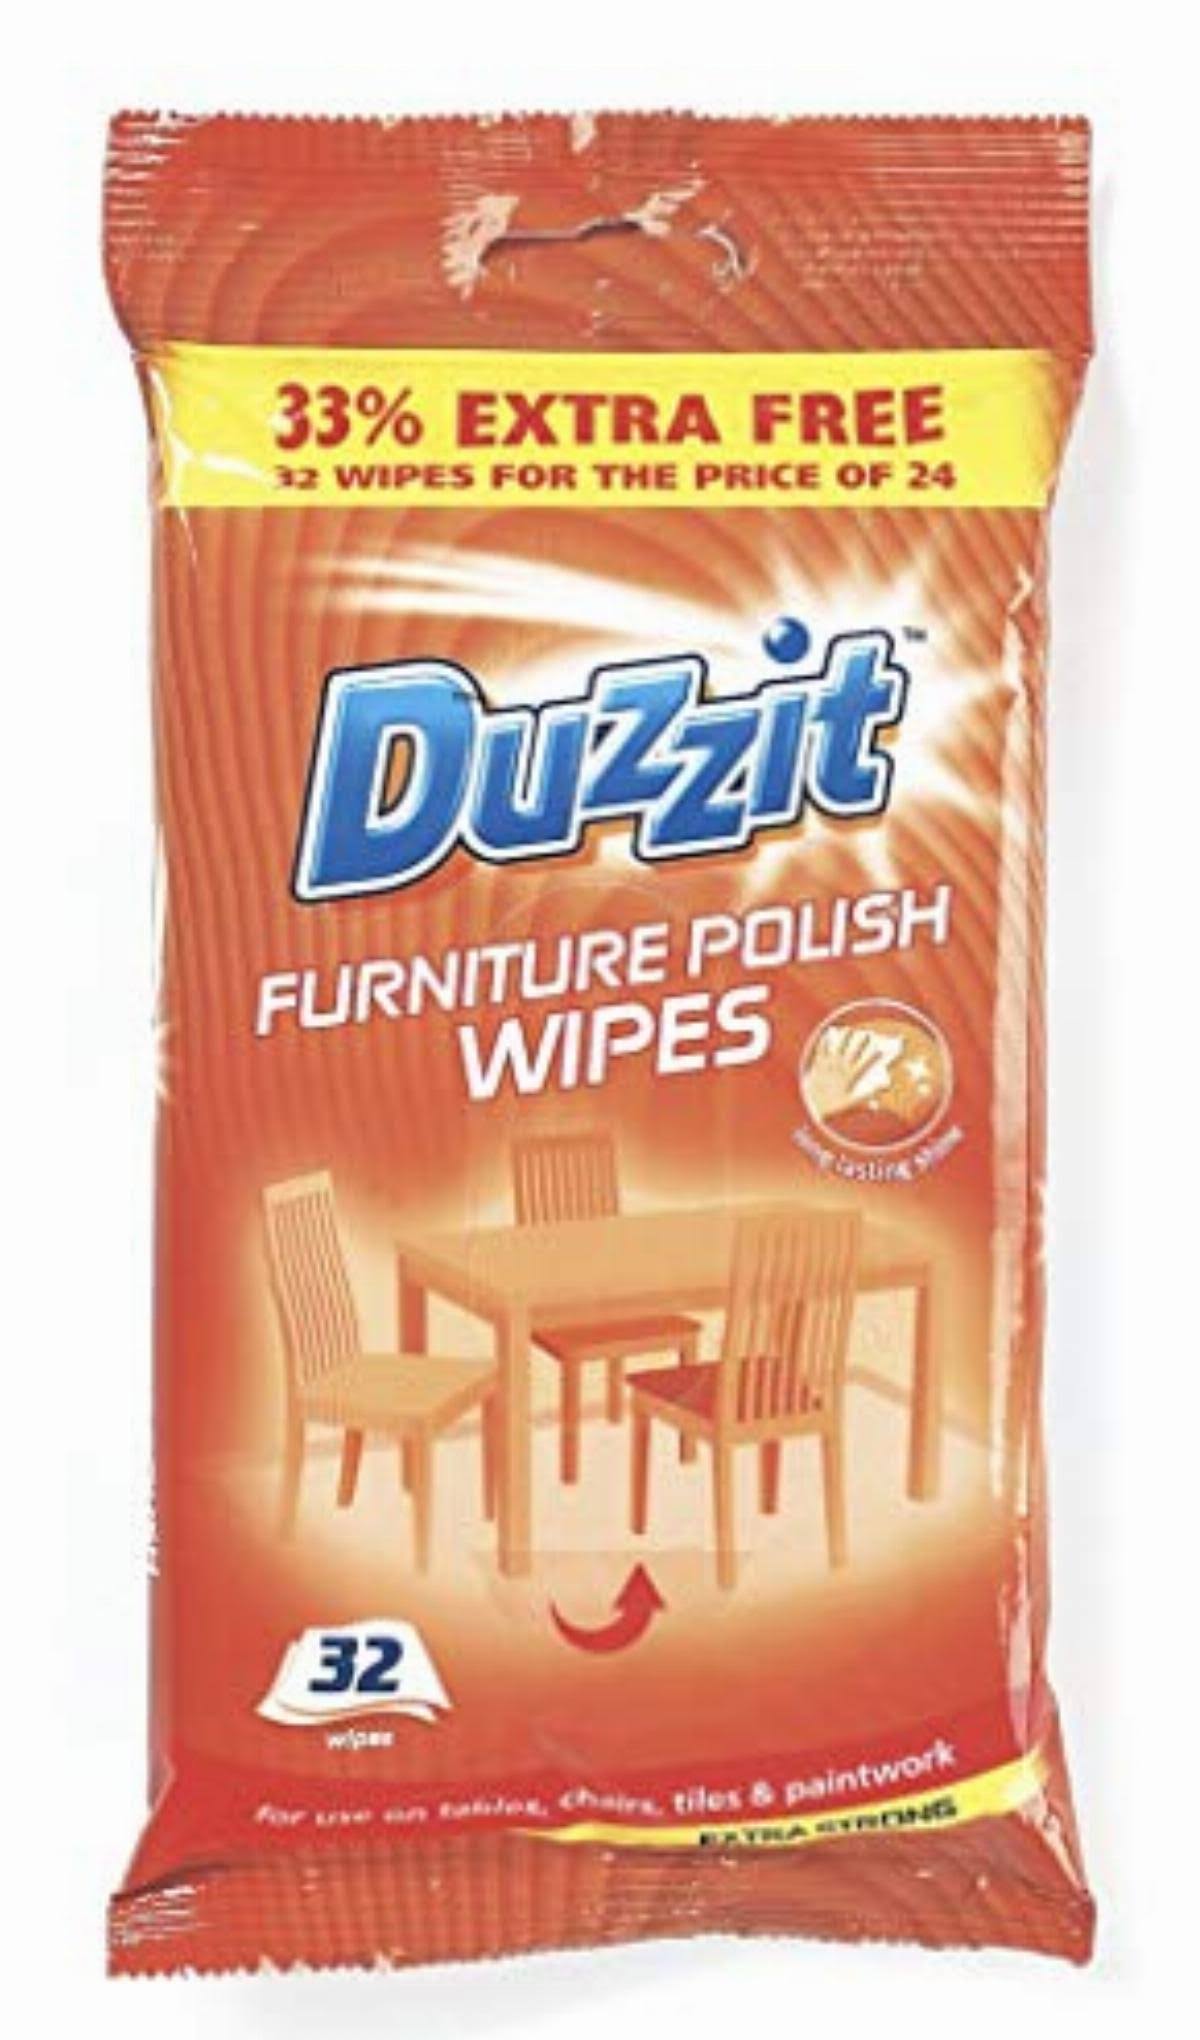 Duzzit Furniture Polish Wipes - 32ct